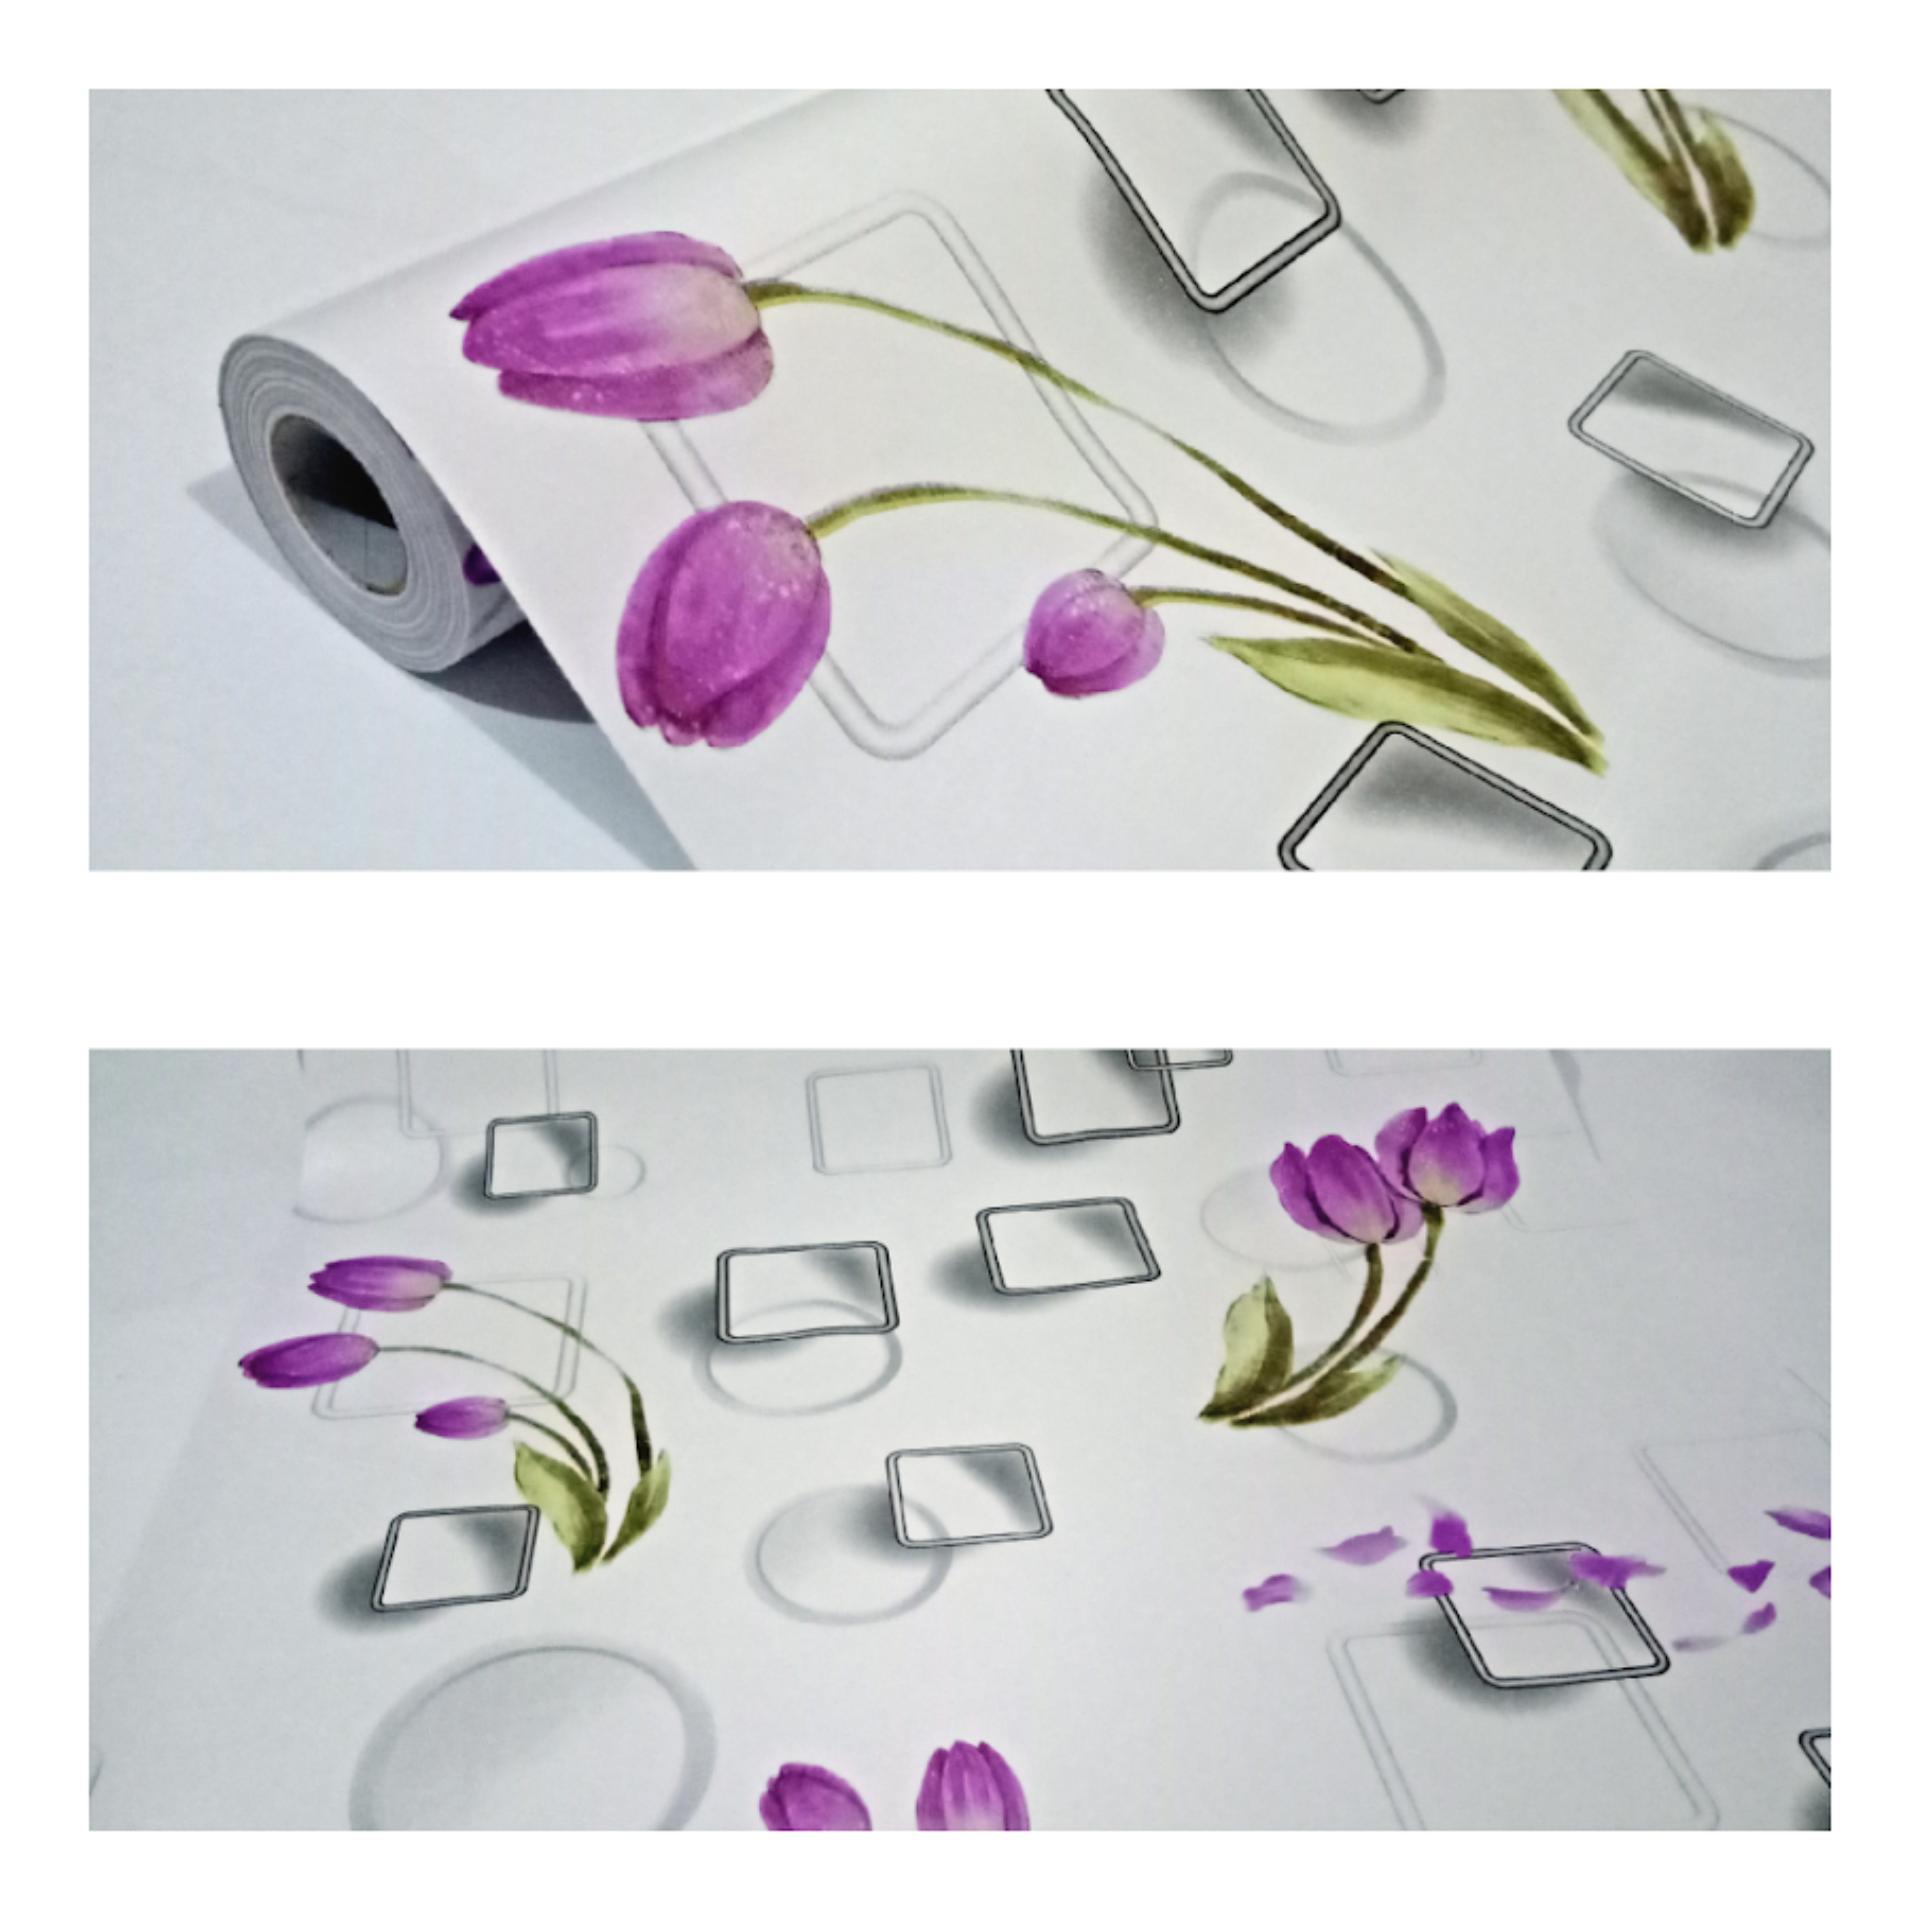 Wallpaper Termurah Terlaris Sticker Dinding Minimalis - Stiker Dinding Motif Ungu , HD Wallpaper & Backgrounds